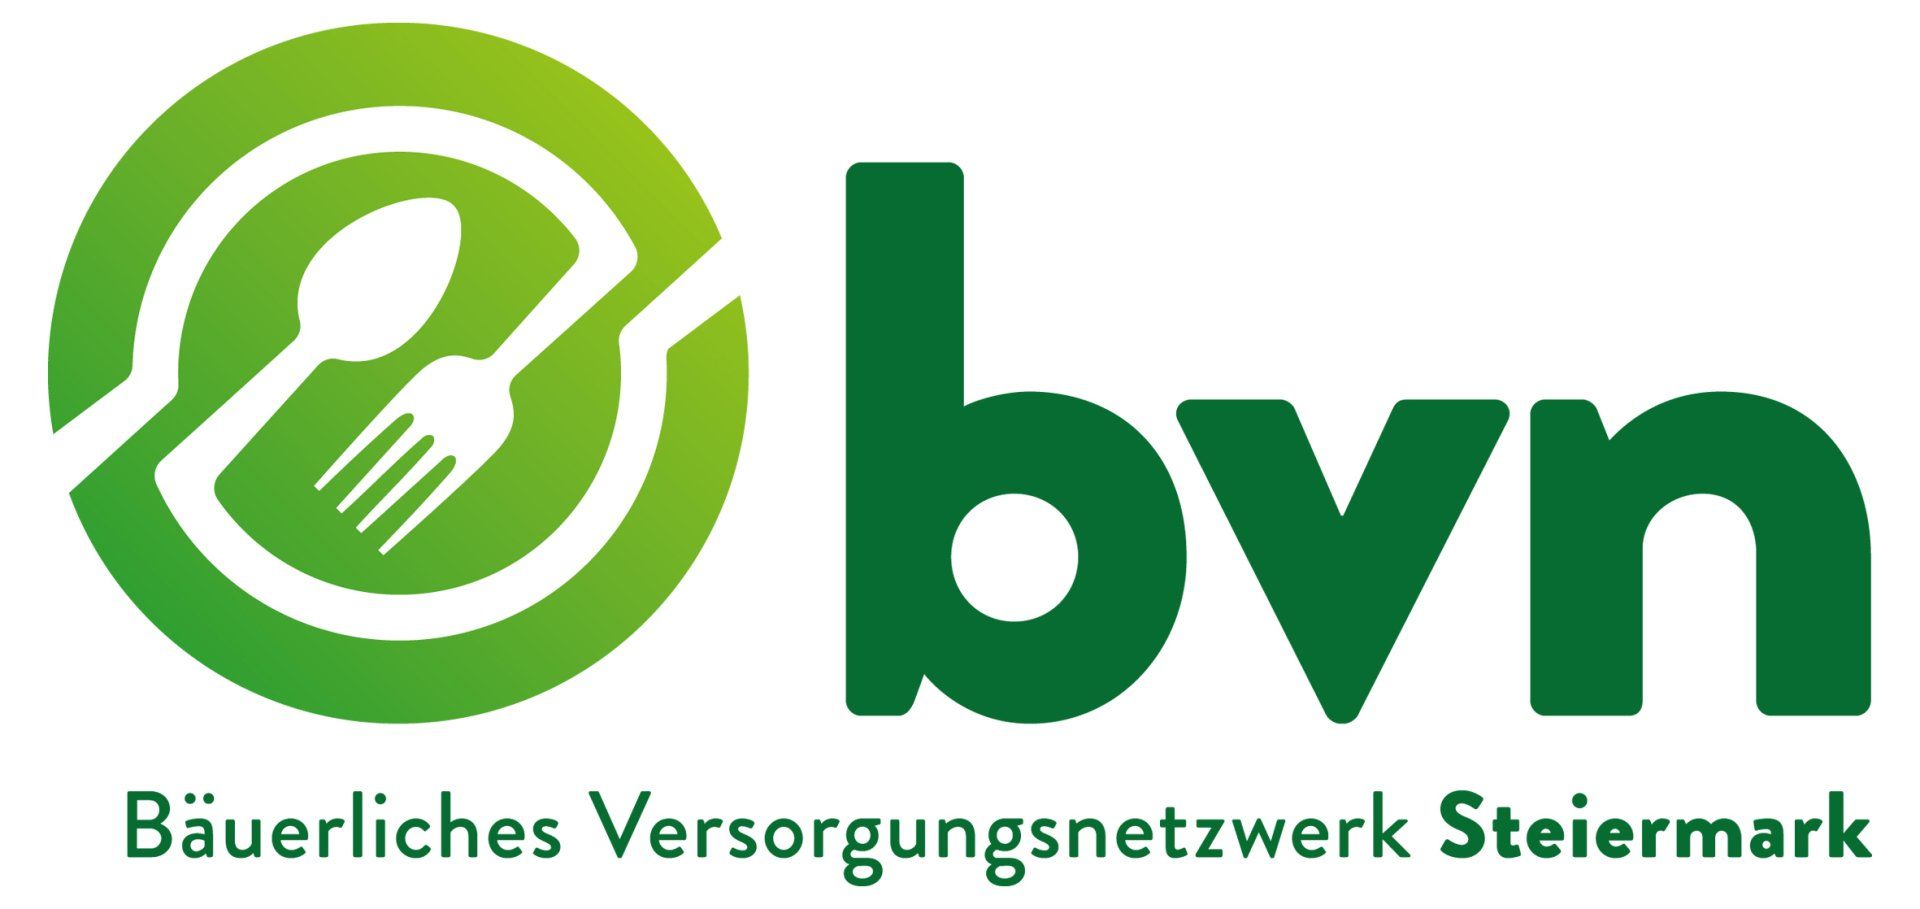 BVN, Bäuerliches Versorgungsnetzwerk Steiermark, Logo